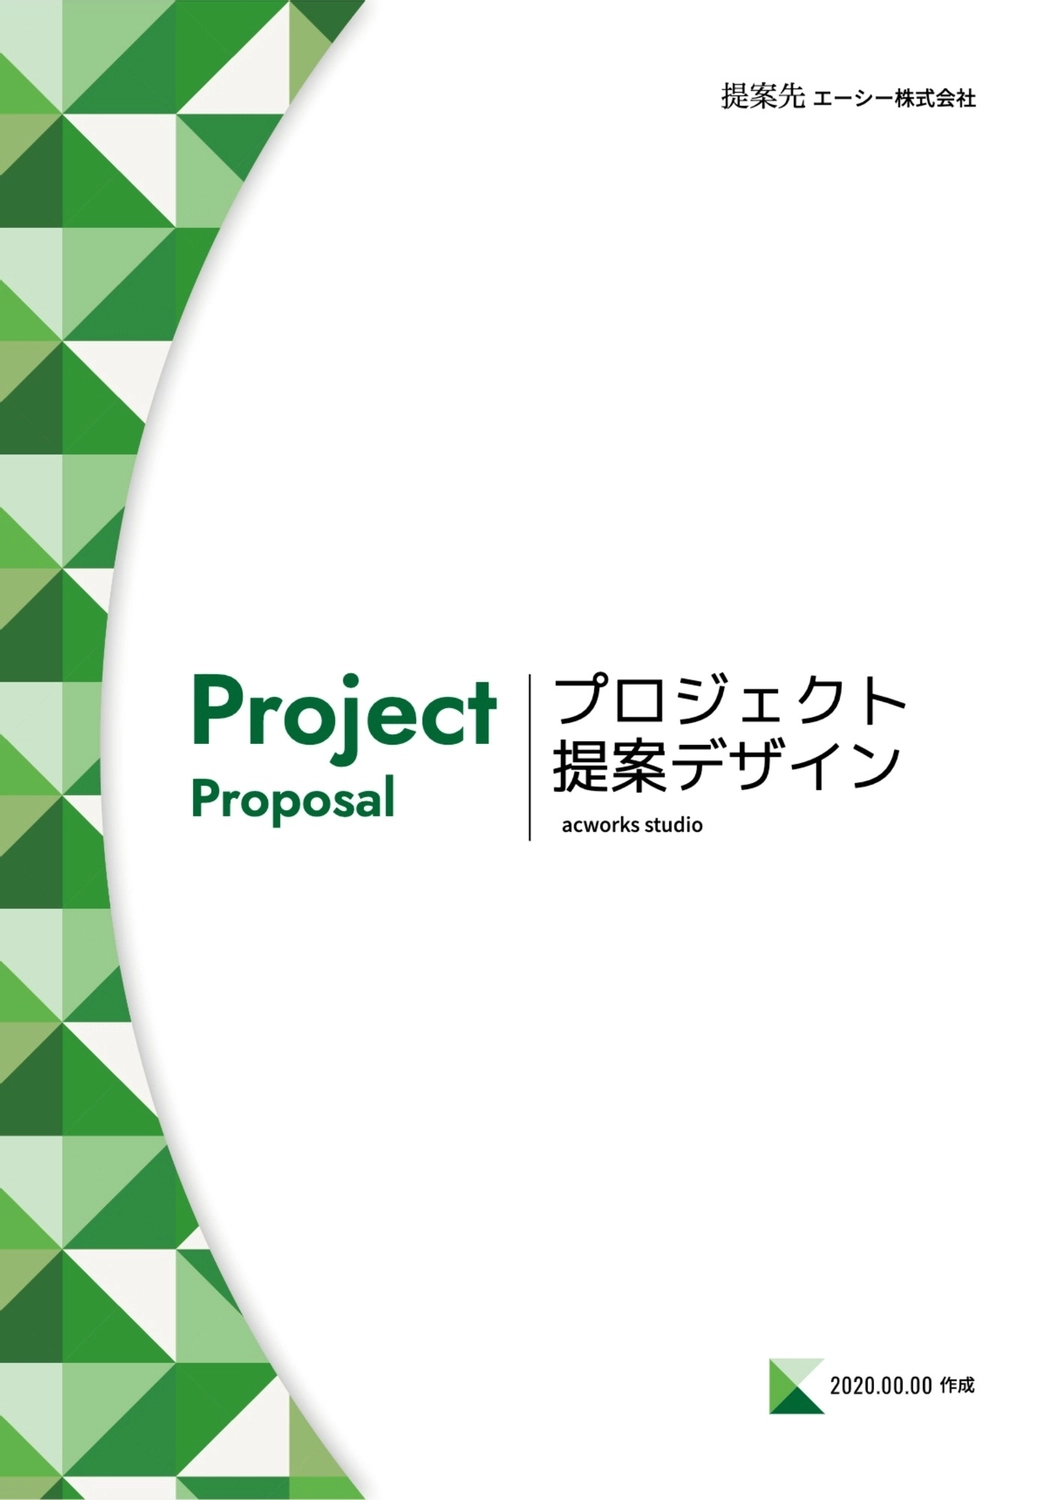 プロジェクト提案デザイン, 緑, 作成, デザイン, A4文書テンプレート